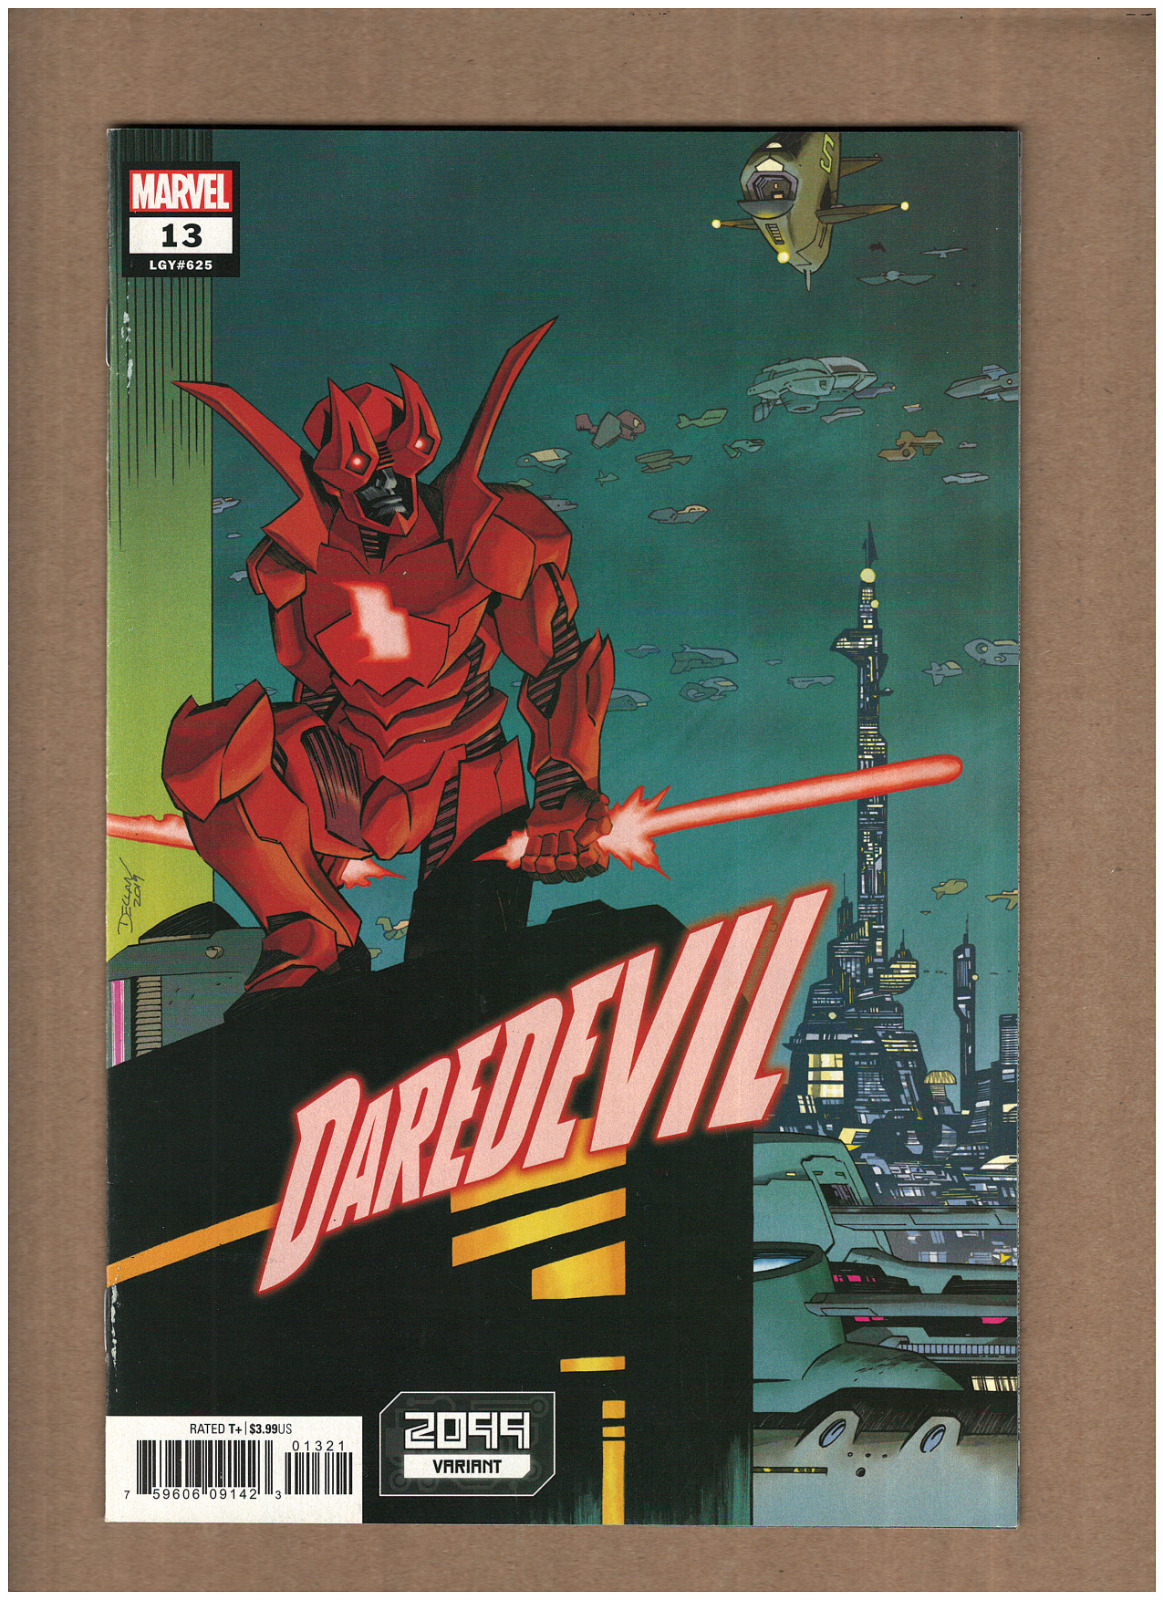 Daredevil #13 Marvel Comics 2020 Chip Zdarsky 2099 Variant NM- 9.2